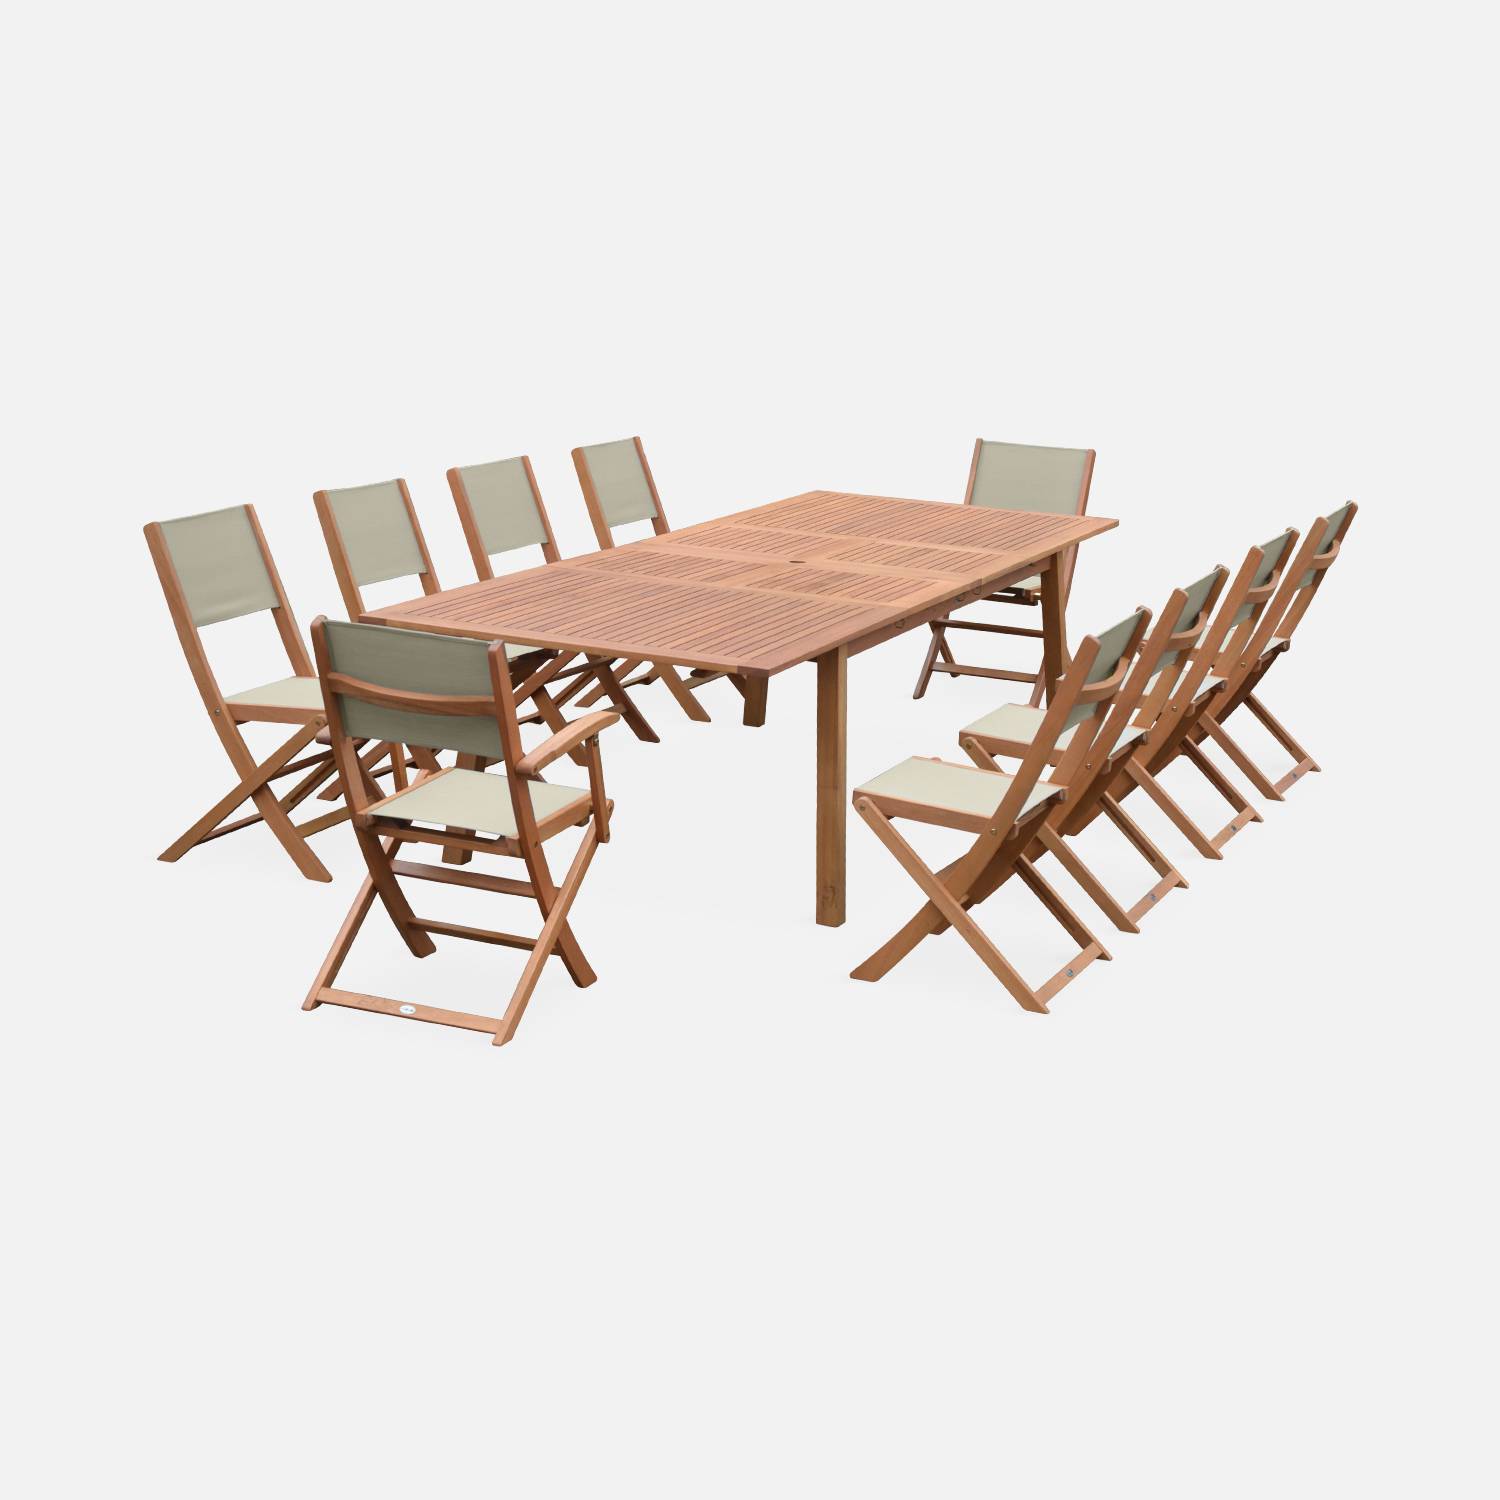 Ausziehbare Gartenmöbel aus Holz - Almeria Tisch 200/250/300cm mit 2 Verlängerungen, 2 Sesseln und 8 Stühlen, aus geöltem FSC Eukalyptusholz und taupgrau Textilene,sweeek,Photo3